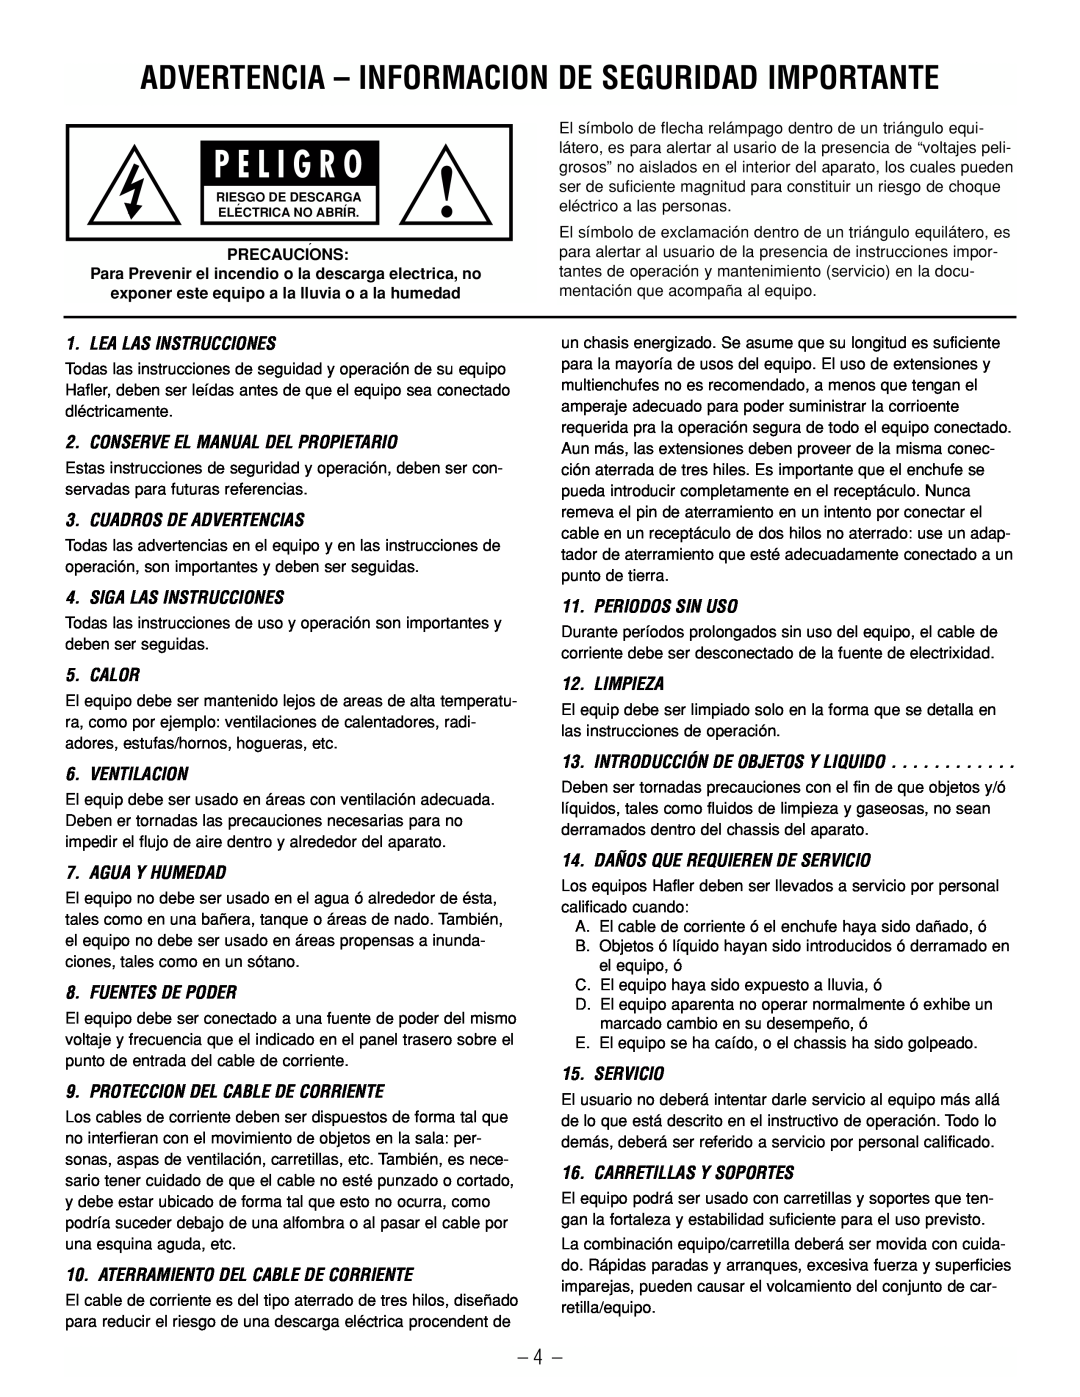 Hafler GX2300CE, GX2600CE manual P E L I G R O, Advertencia - Informacion De Seguridad Importante 